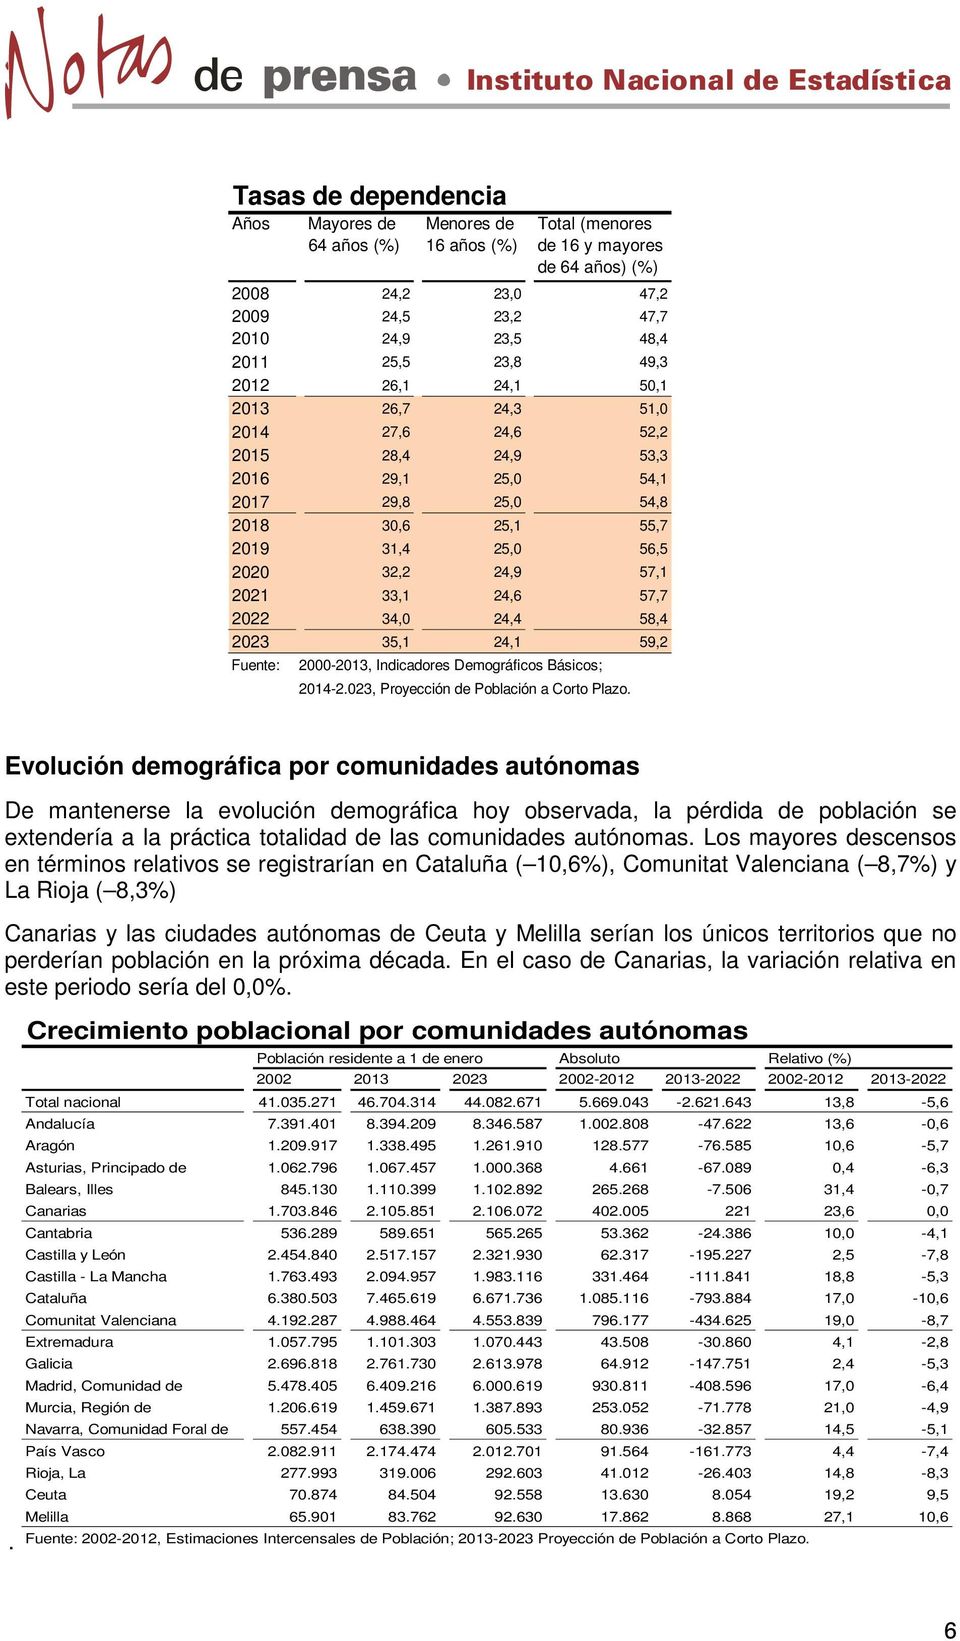 2022 34,0 24,4 58,4 2023 35,1 24,1 59,2 Fuente: 2000-2013, Indicadores Demográficos Básicos; 2014-2.023, Proyección de Población a Corto Plazo.